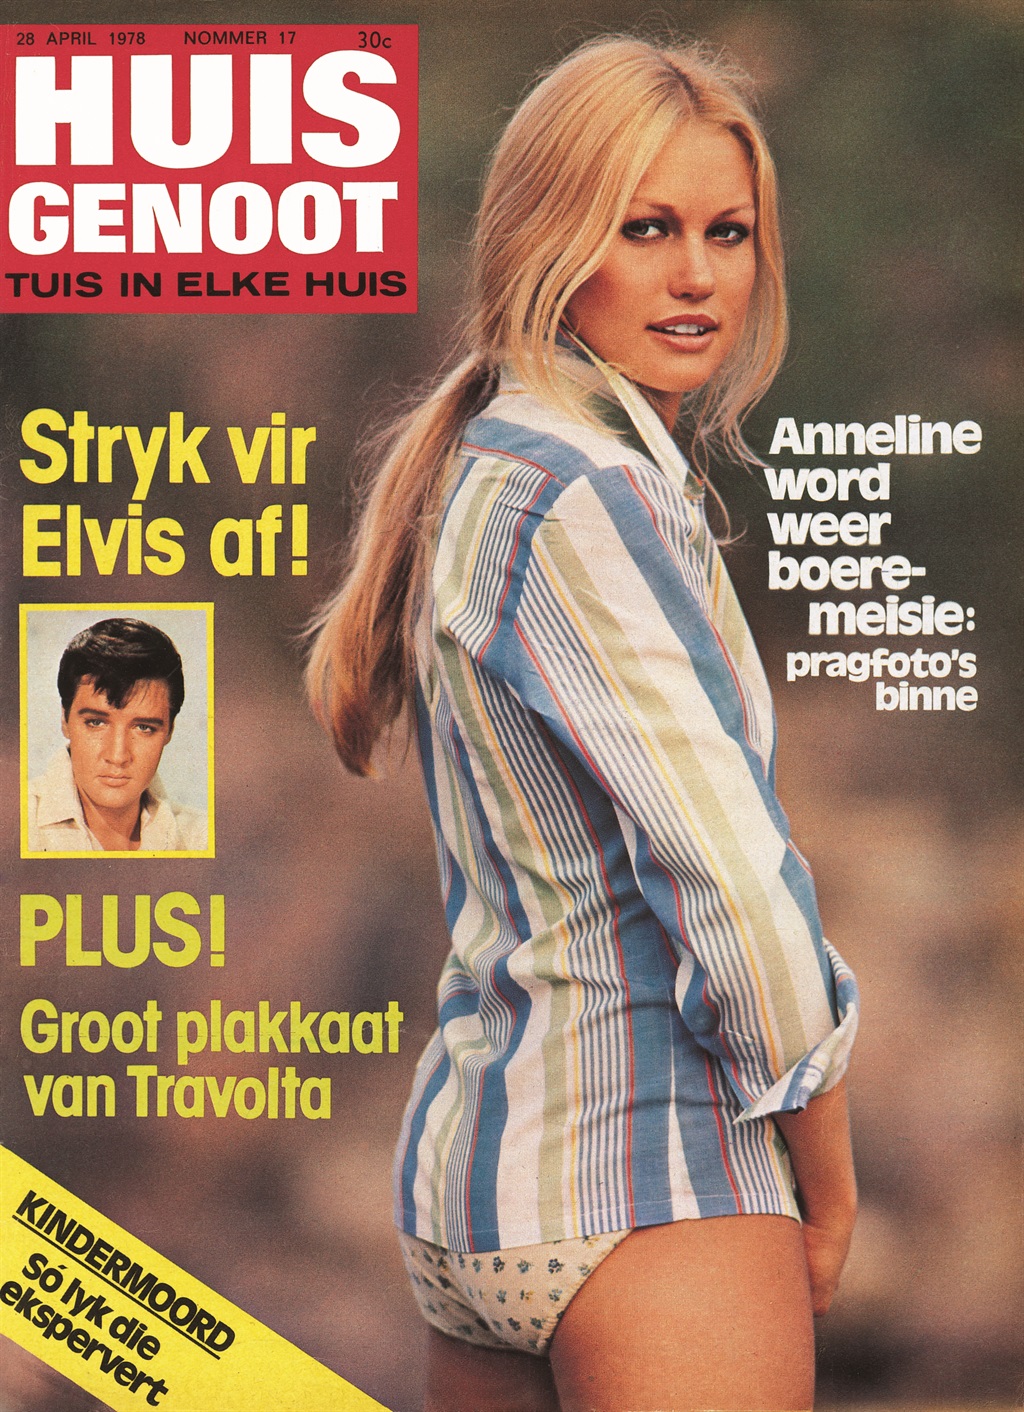 Die ikoniese Huisgenoot-voorblad van haar in April 1978 het die tonge behoorlik laat klap. Foto: Huisgenoot argief